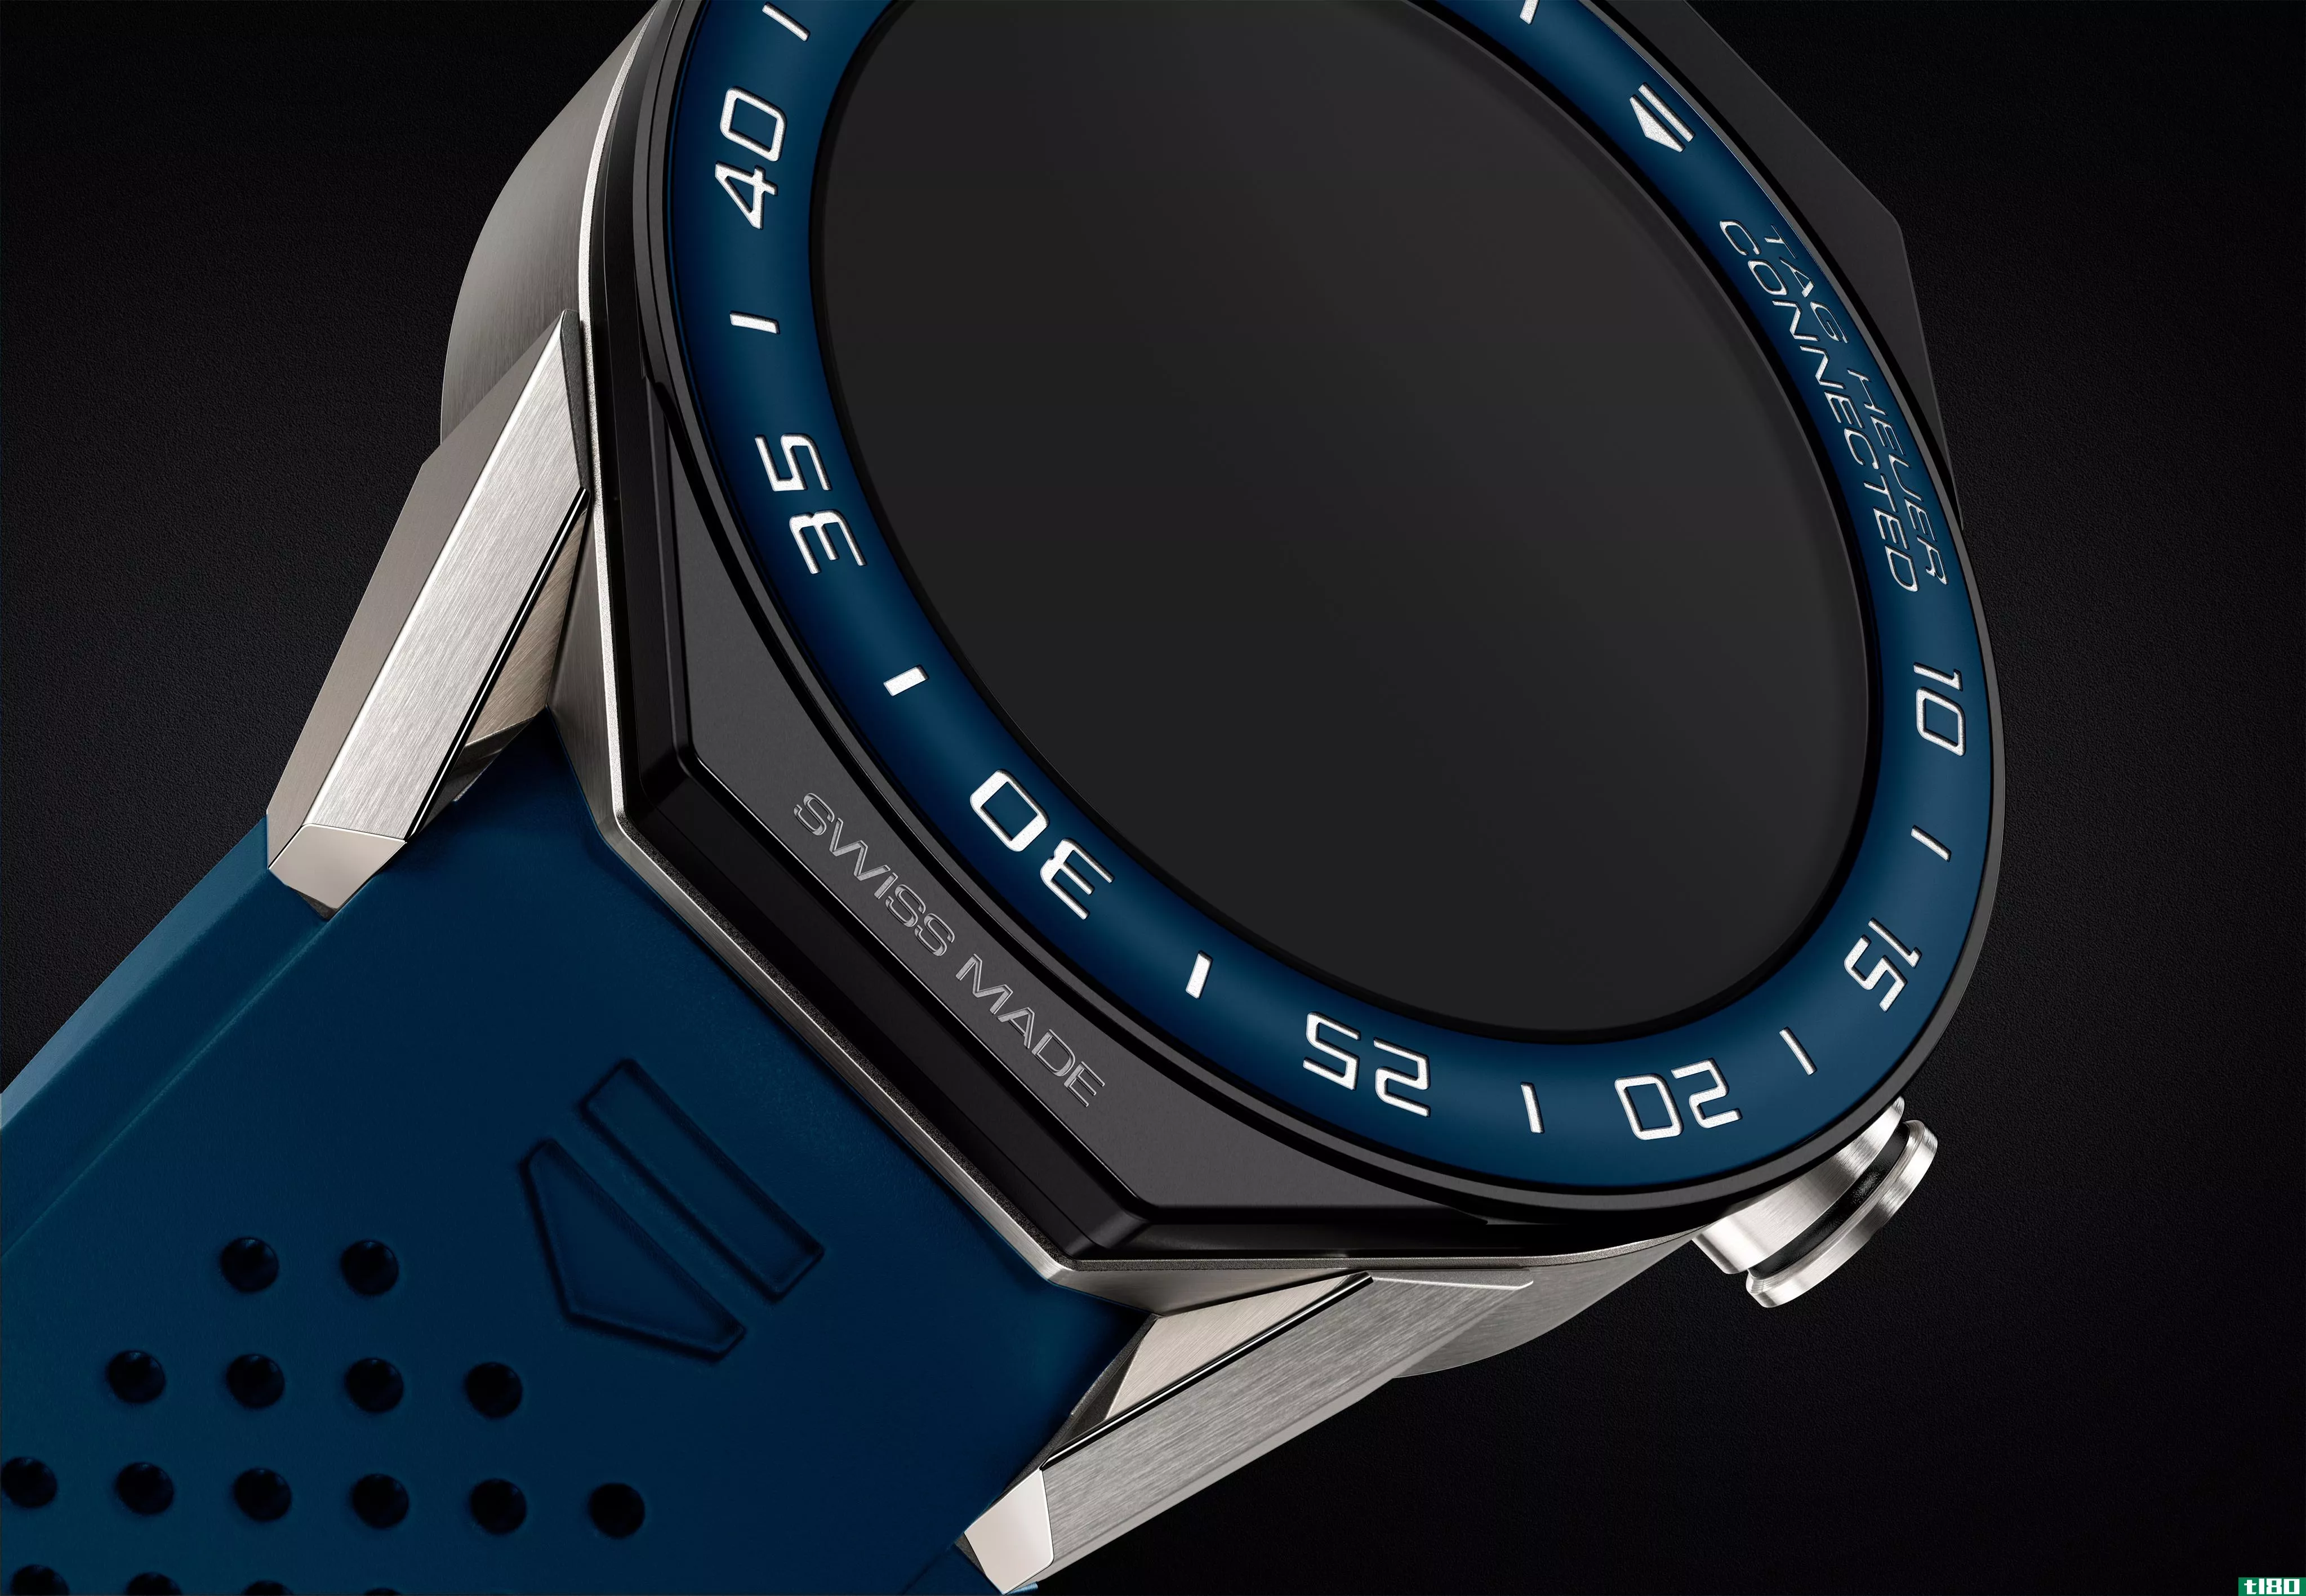 豪雅和英特尔将再生产一款售价1600美元的安卓wear智能手表